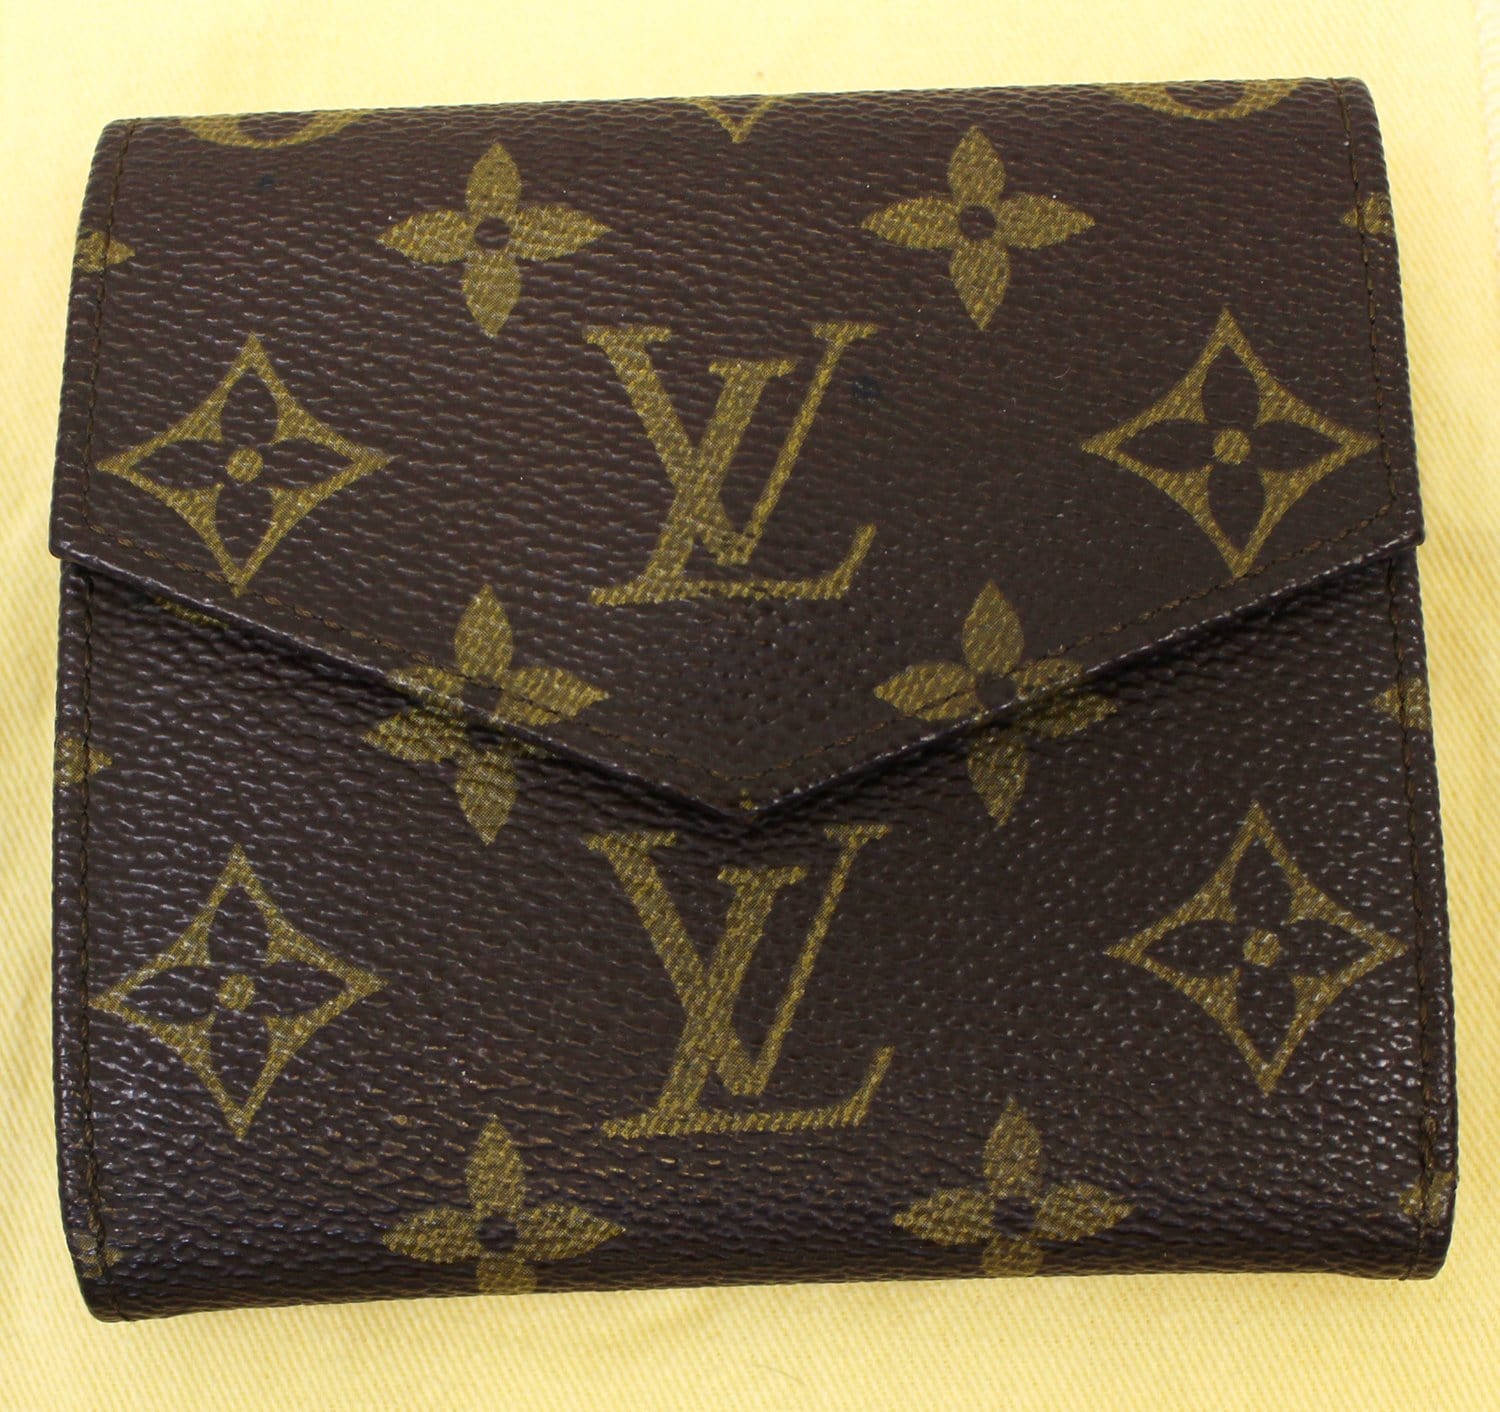 Louis Vuitton Elise Trifold Wallet